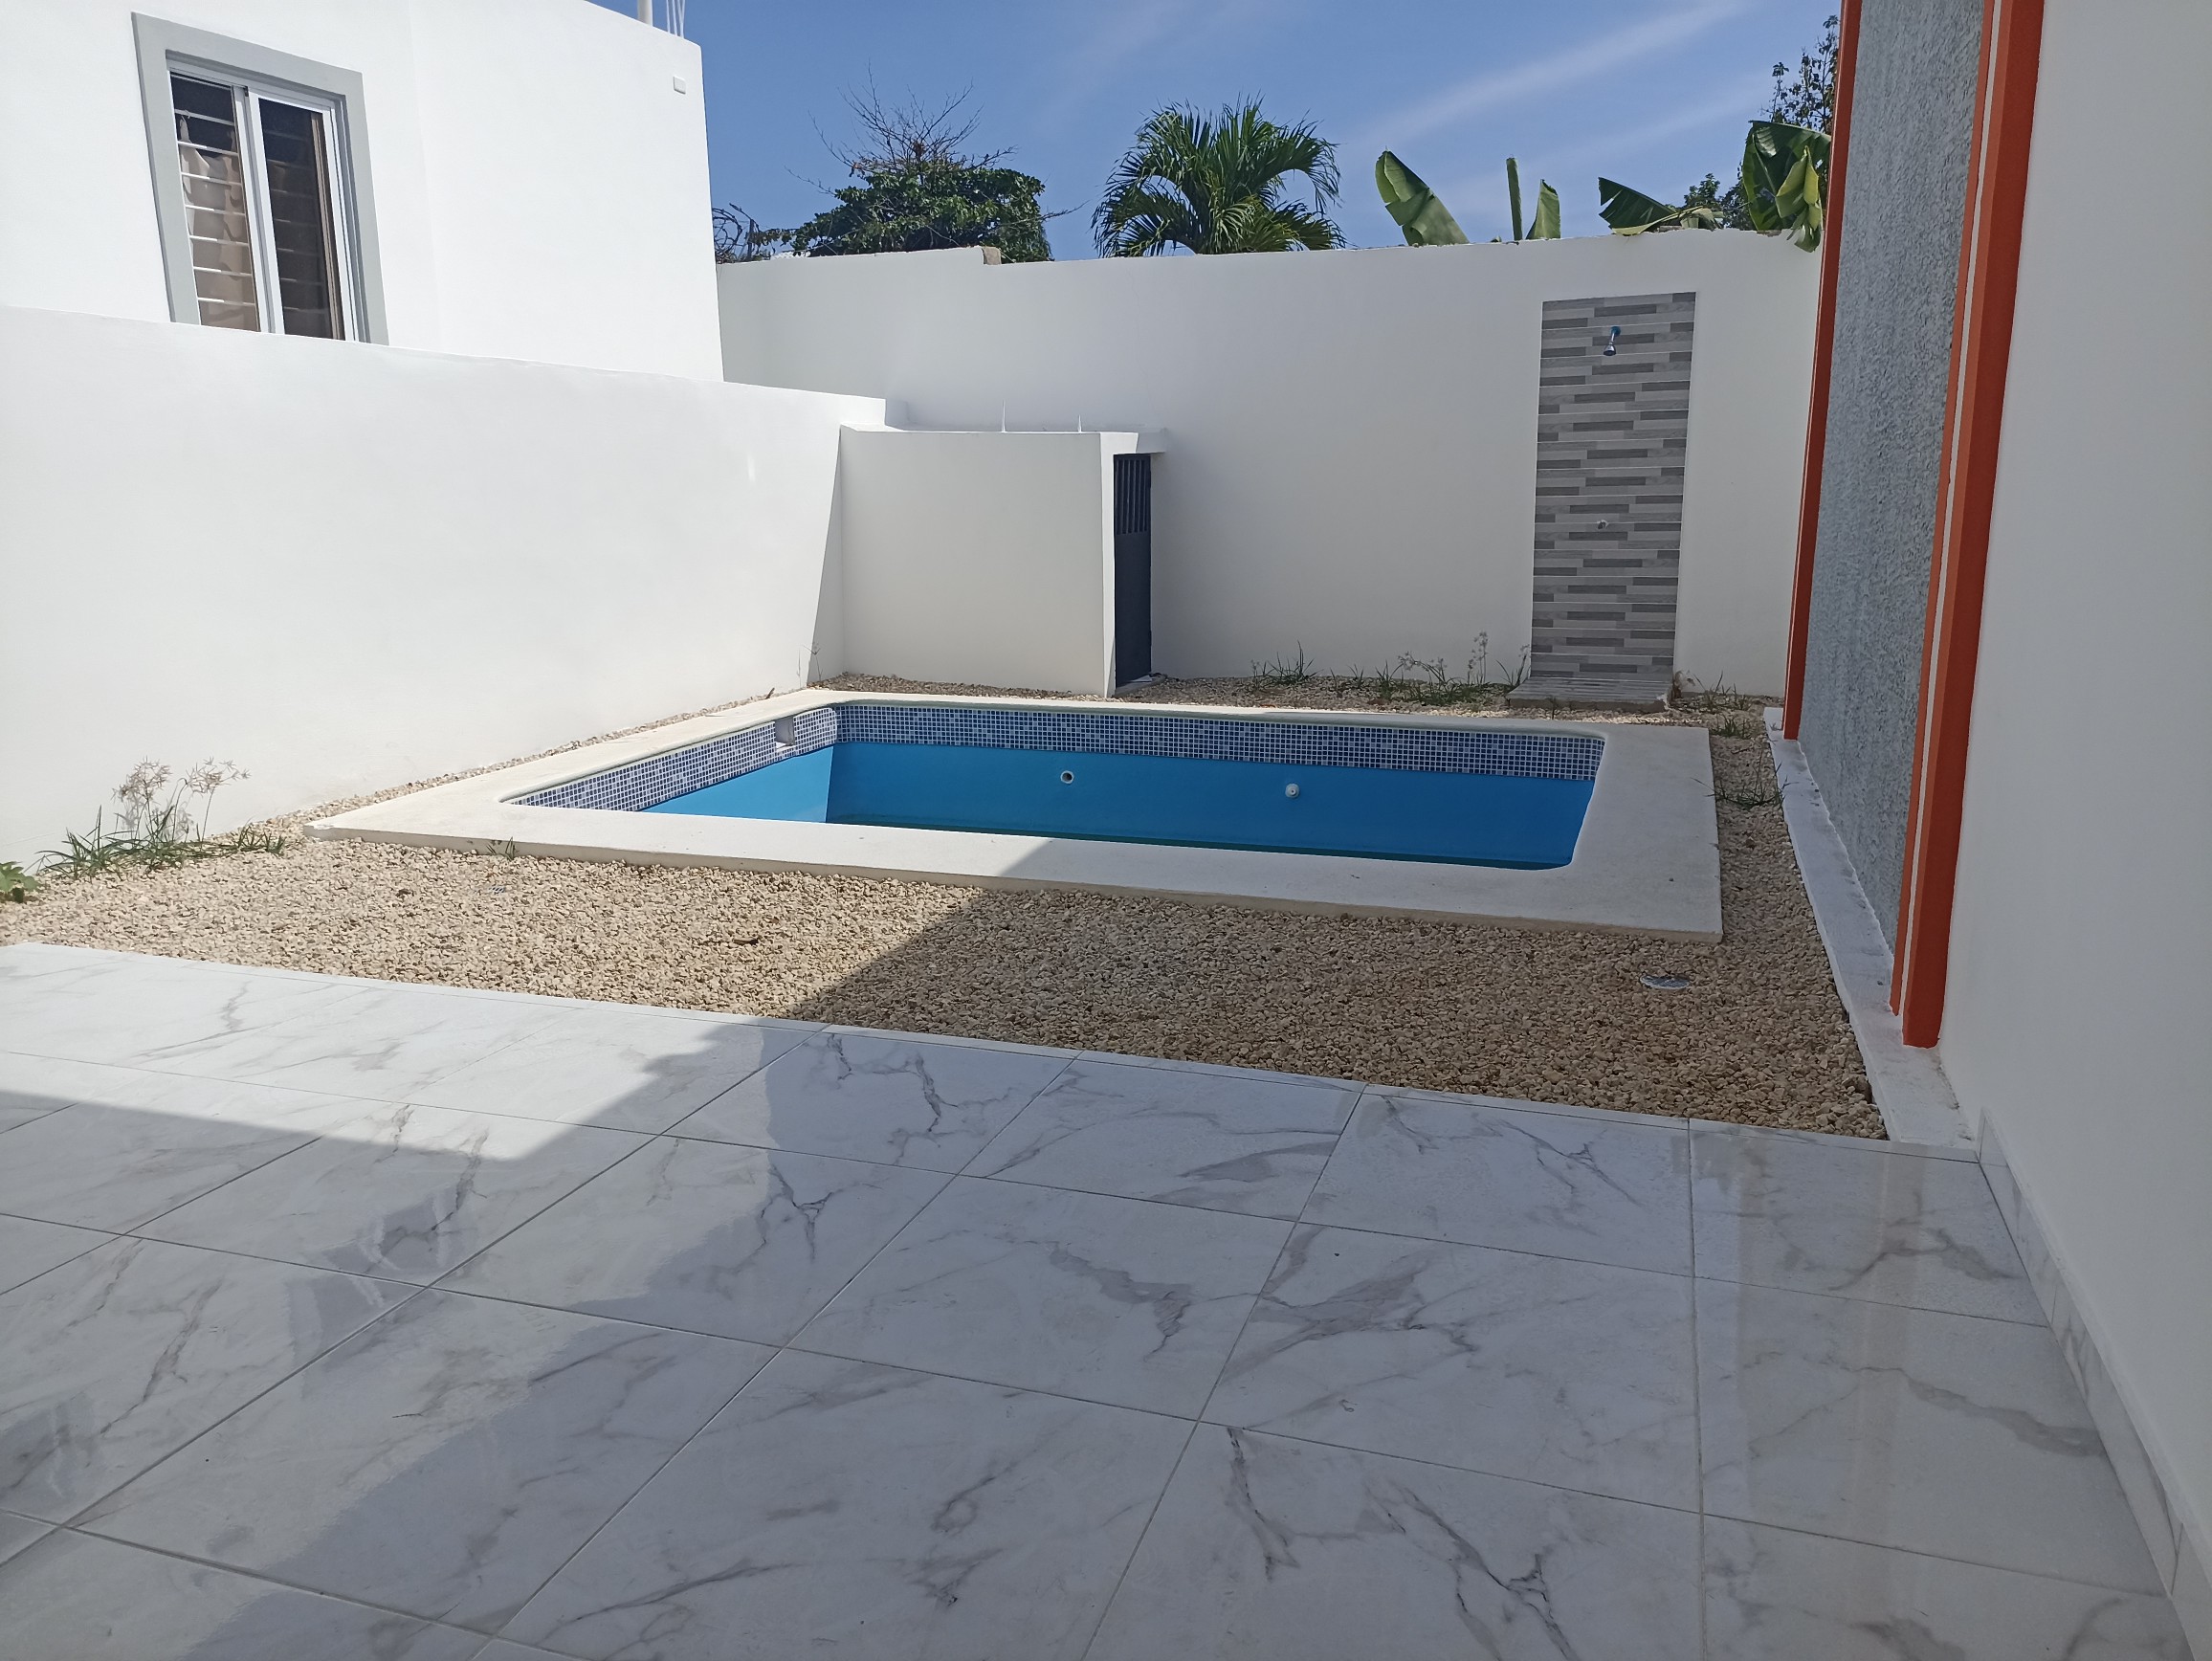 casas - Casa acogedora con piscina con excelente ubicación cerca de la playa 2